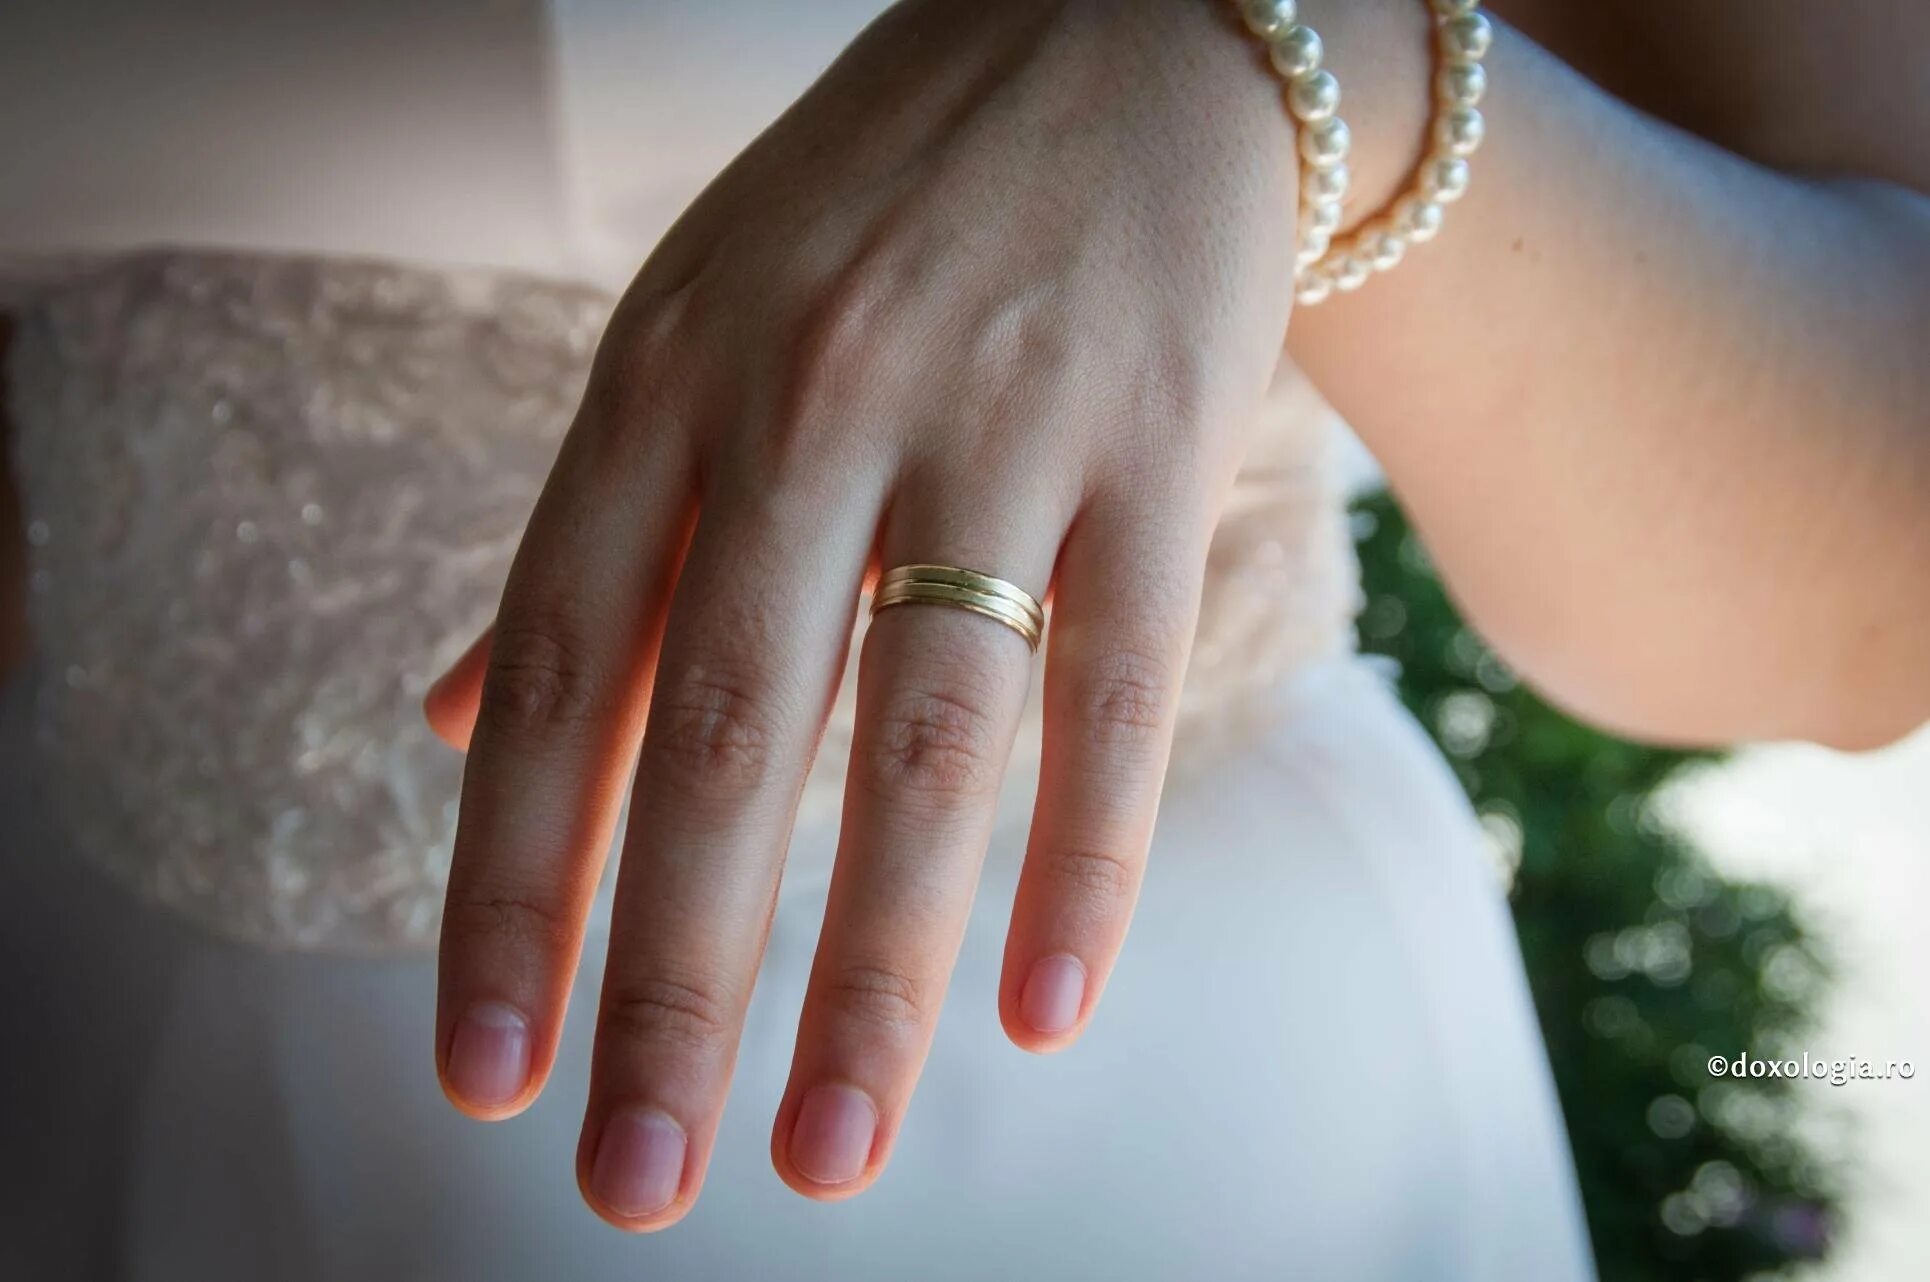 "Обручальное кольцо" Глаголева. Обручальное кольцо на пальце. Кольцо на руке. Обручальные кольца на руках.